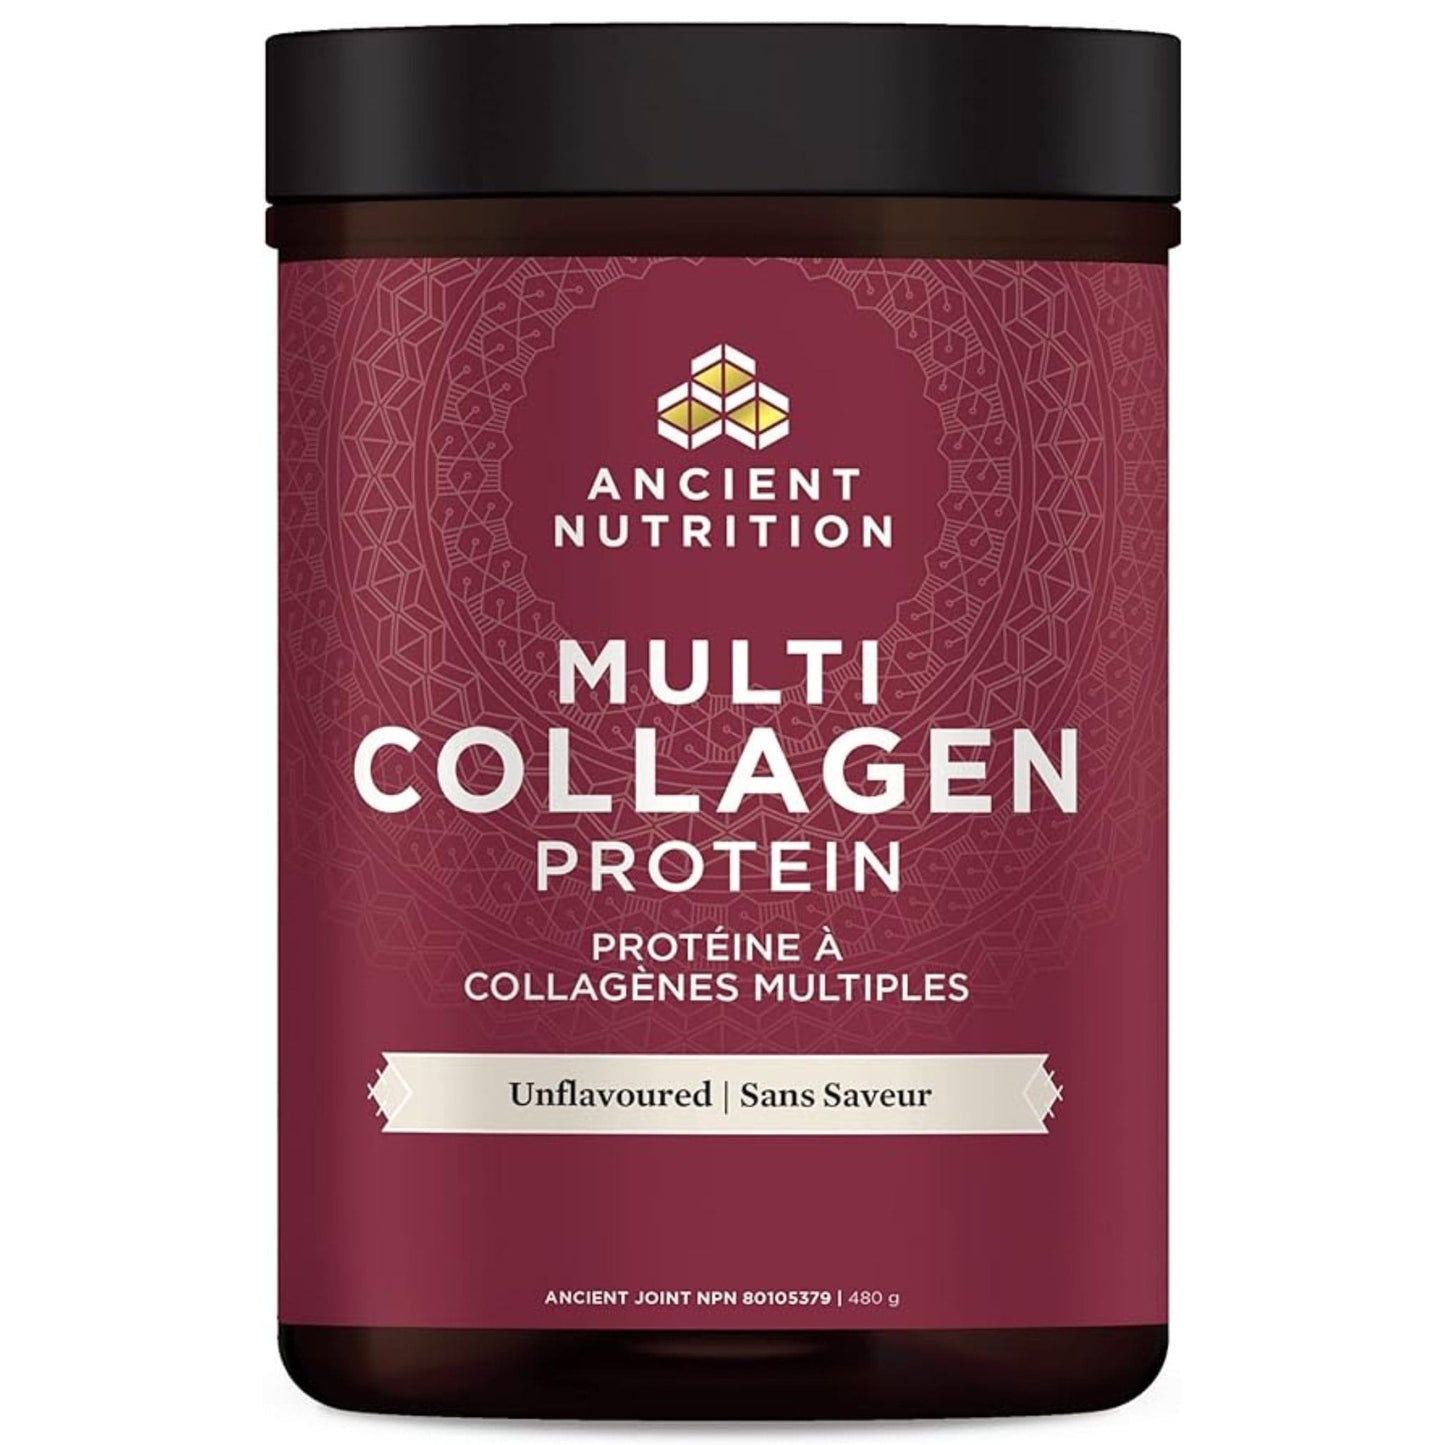 Unflavoured 480g | Ancient Nutrition Multi Collagen Protein Powder // Unflavoured